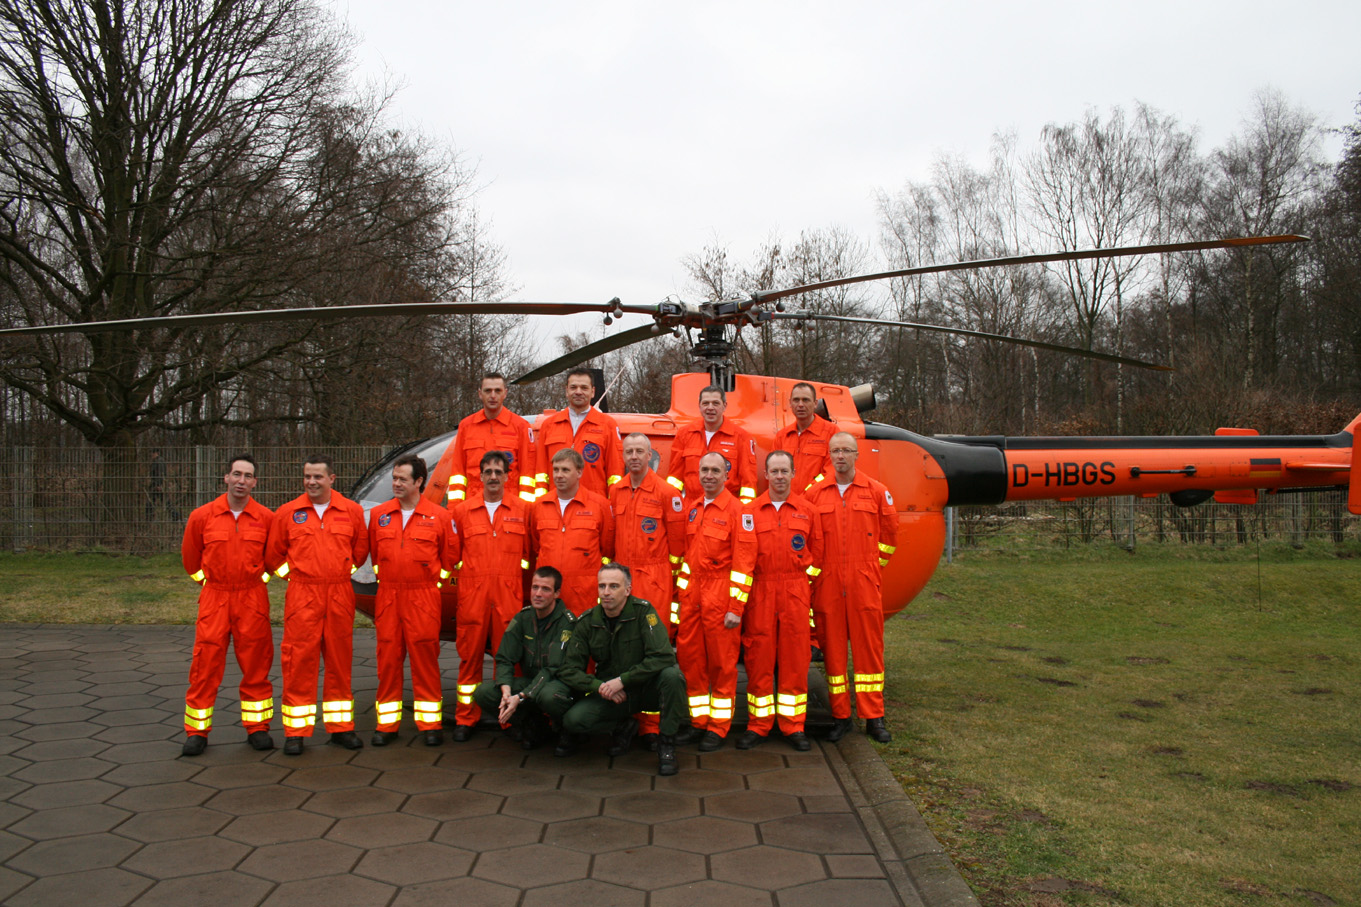 Gruppenfoto vor der Bo-105
Rettungsassistenten und Piloten, wie immer, "Eine Einheit"! An dieser Stelle darf ruhig einmal erwÃ¤hnt werden, dass die Rettungsassistenten der Feuerwehr Duisburg, die Piloten der Bundespolizei und die Ã„rzte der BG-Unfallklinik in all den Jahren stets hervorragend zusammengearbeitet haben.
